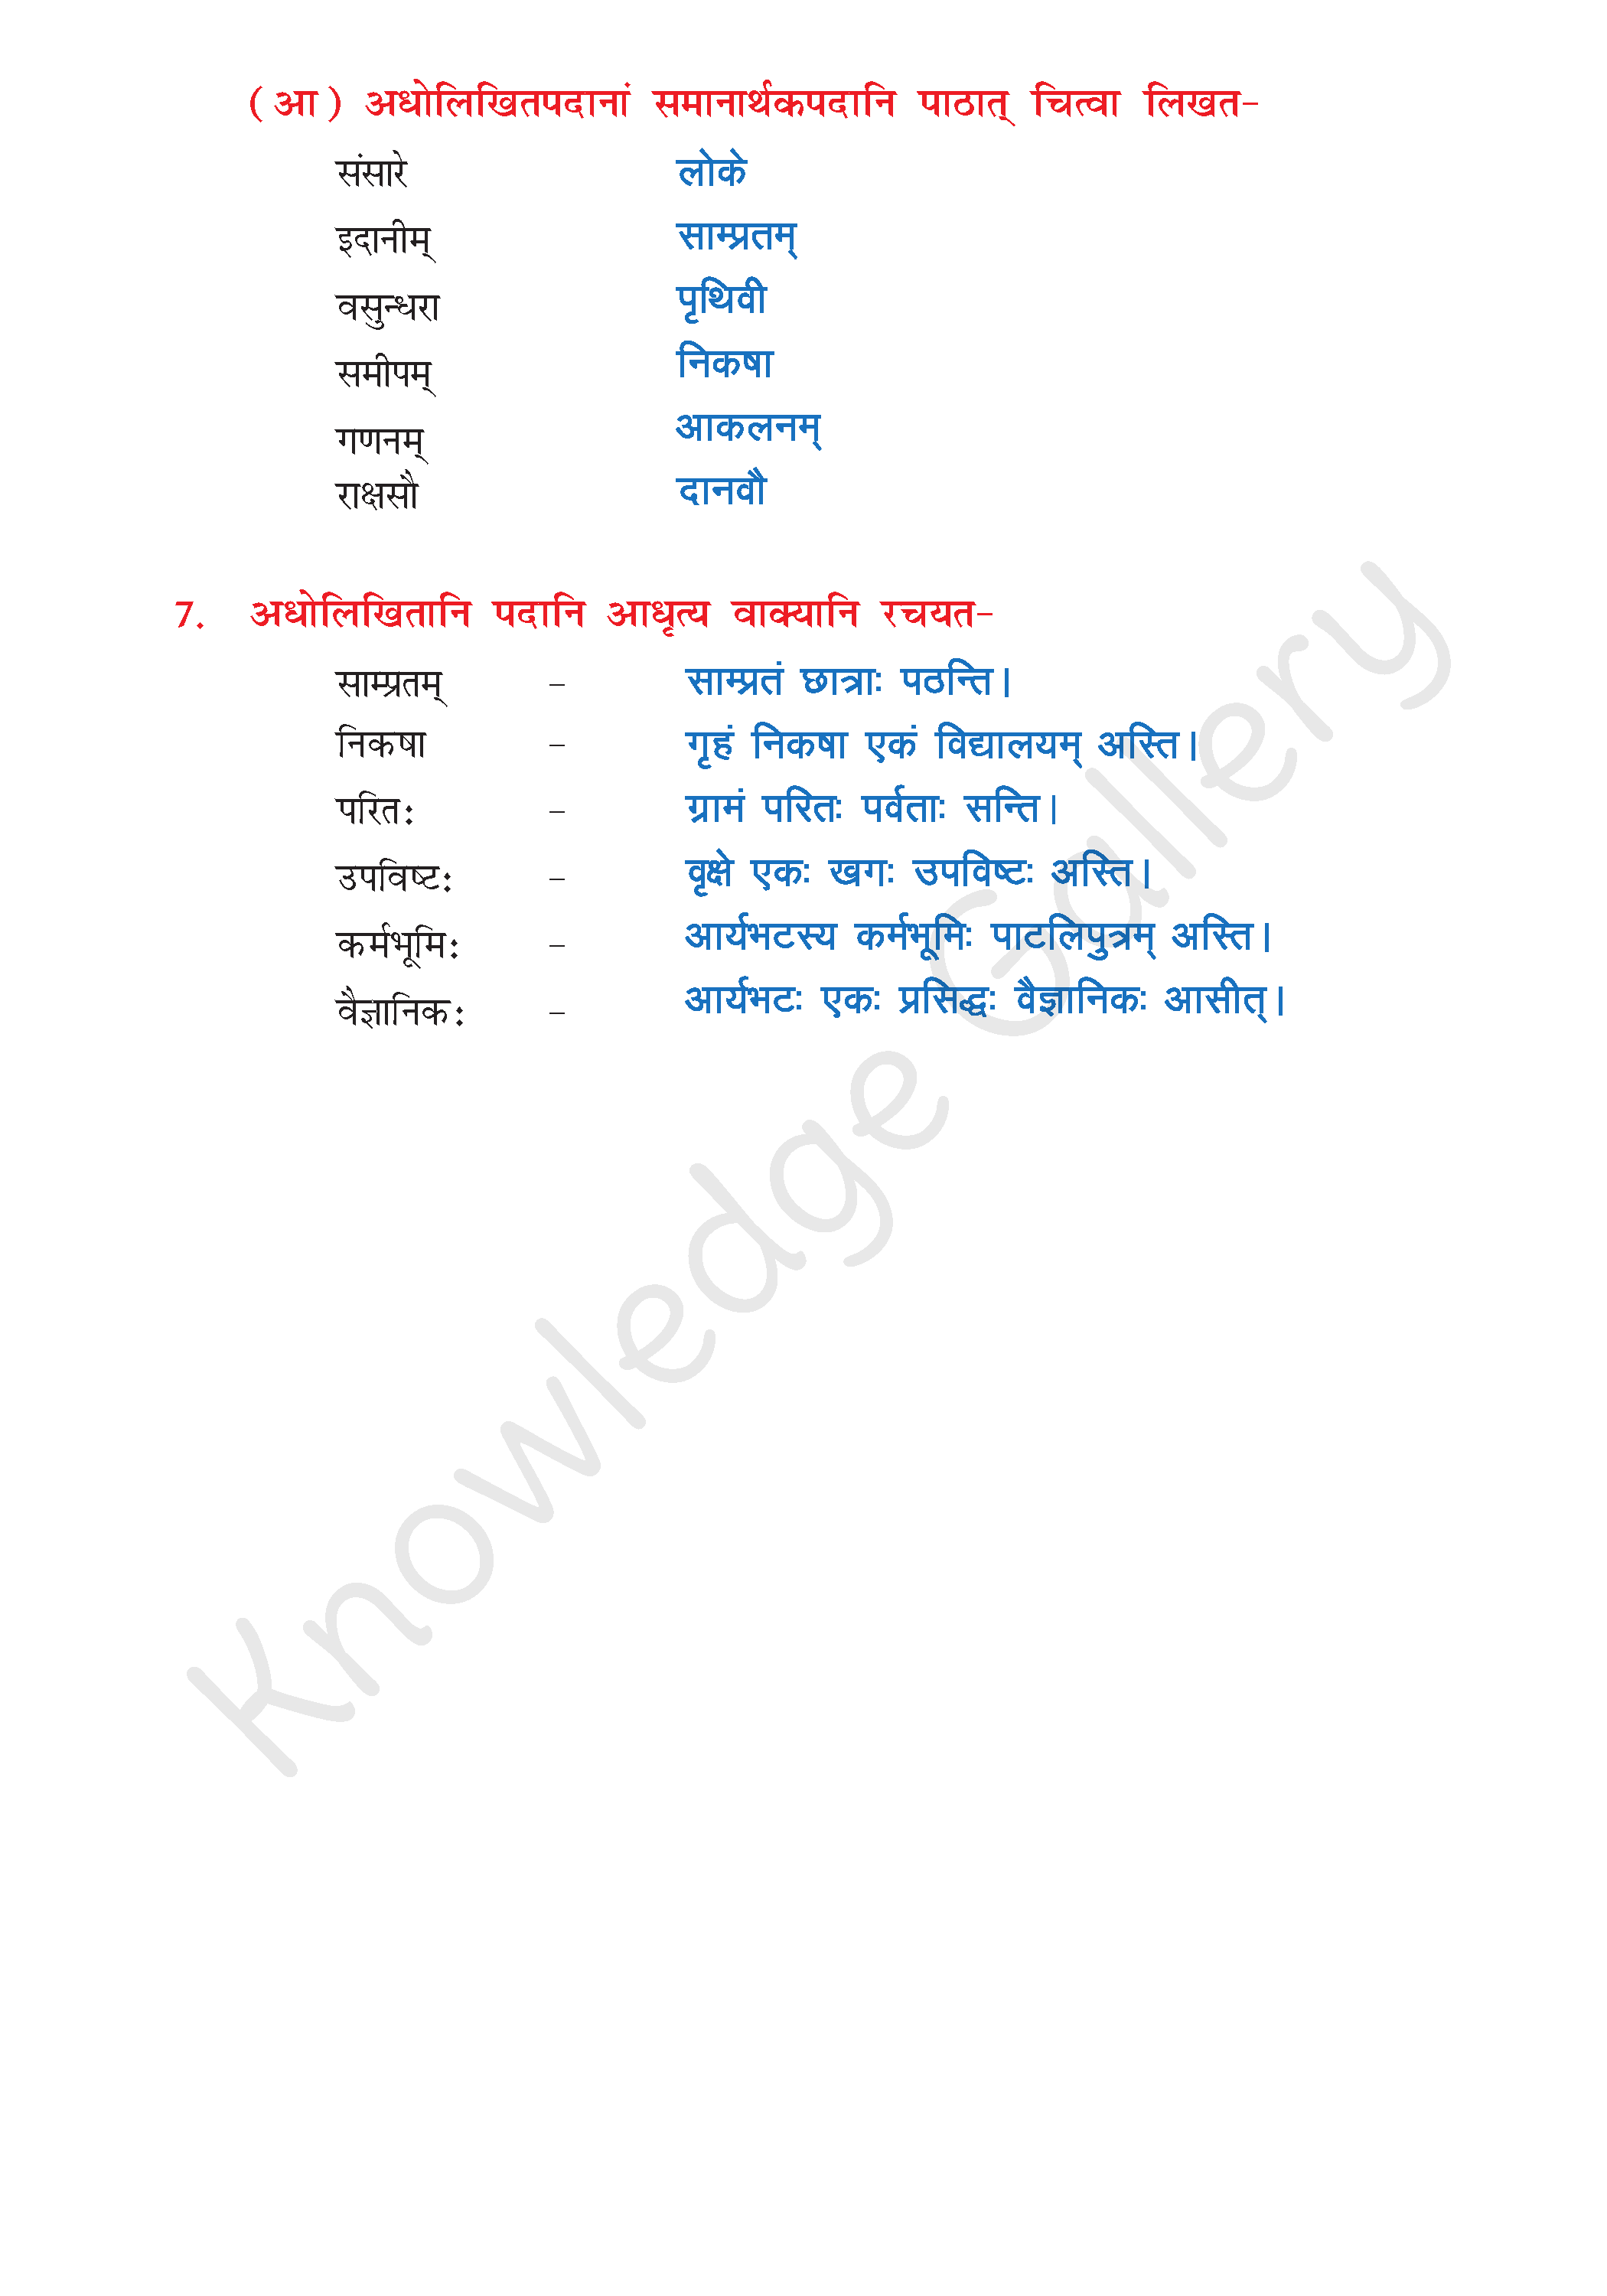 NCERT Solution For Class 8 Sanskrit Chapter 14 part 6